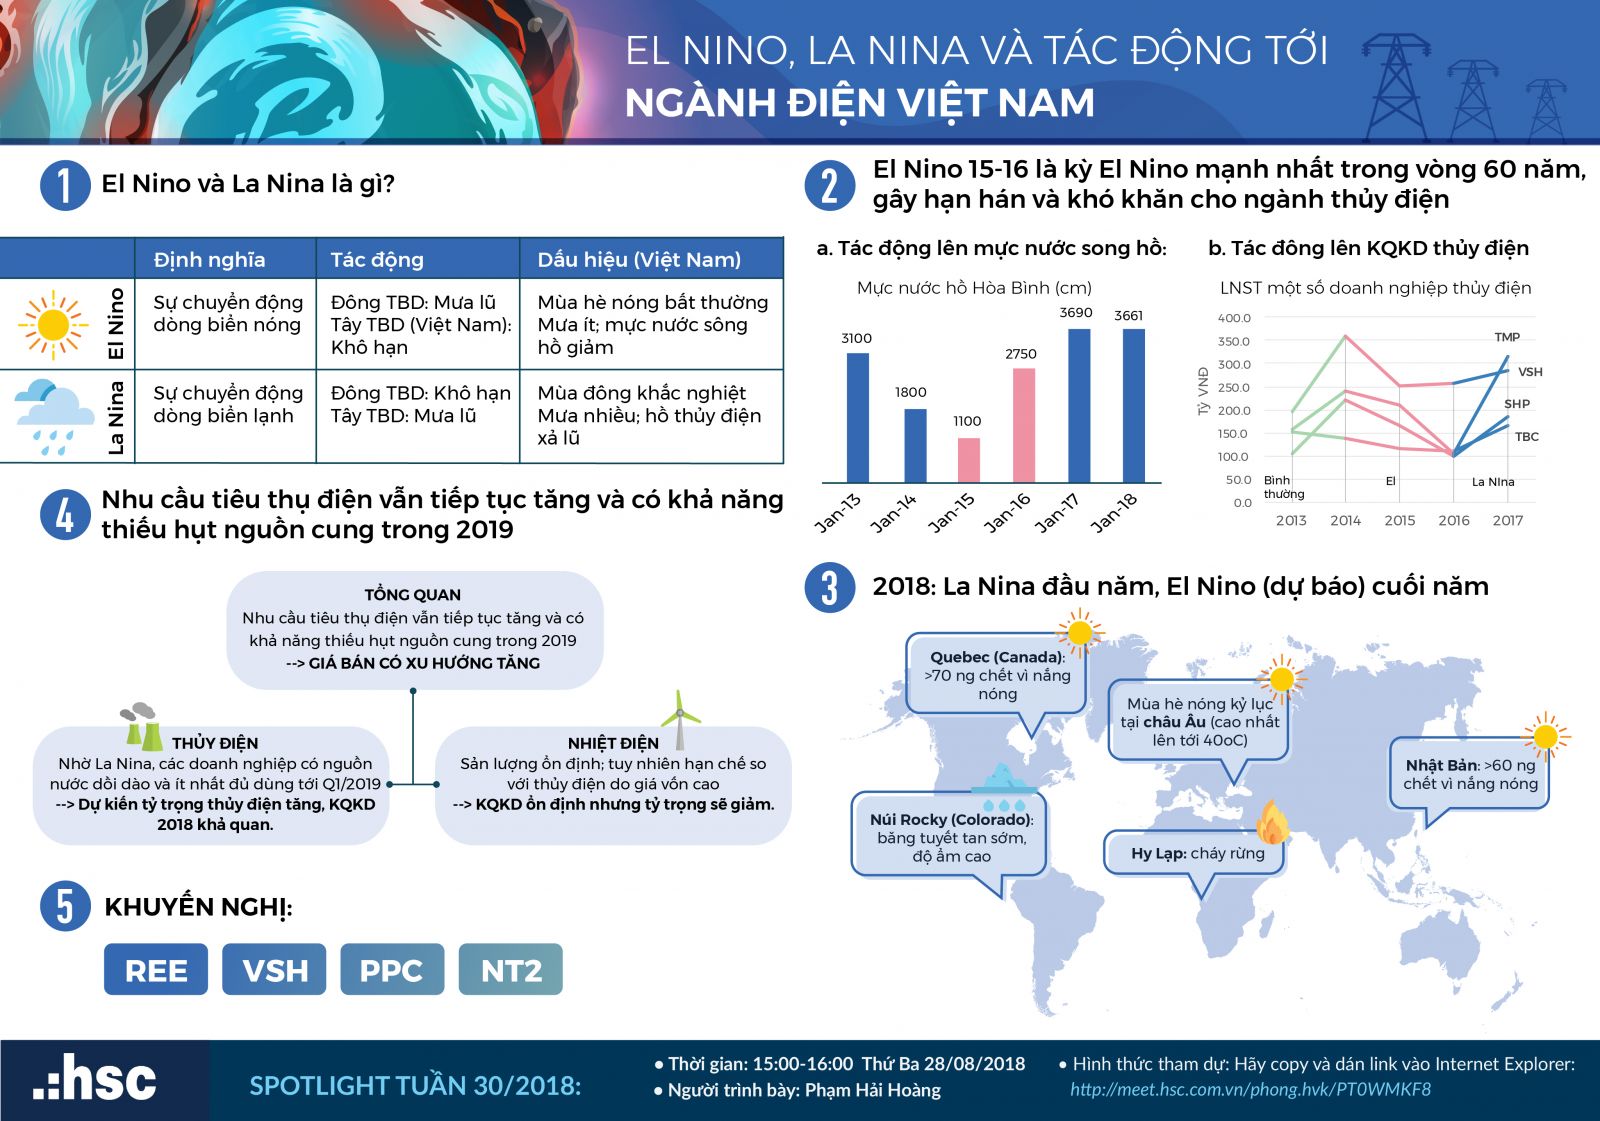 tác động của El Nino, La Nina đến ngành điện Việt Nam như thế nào